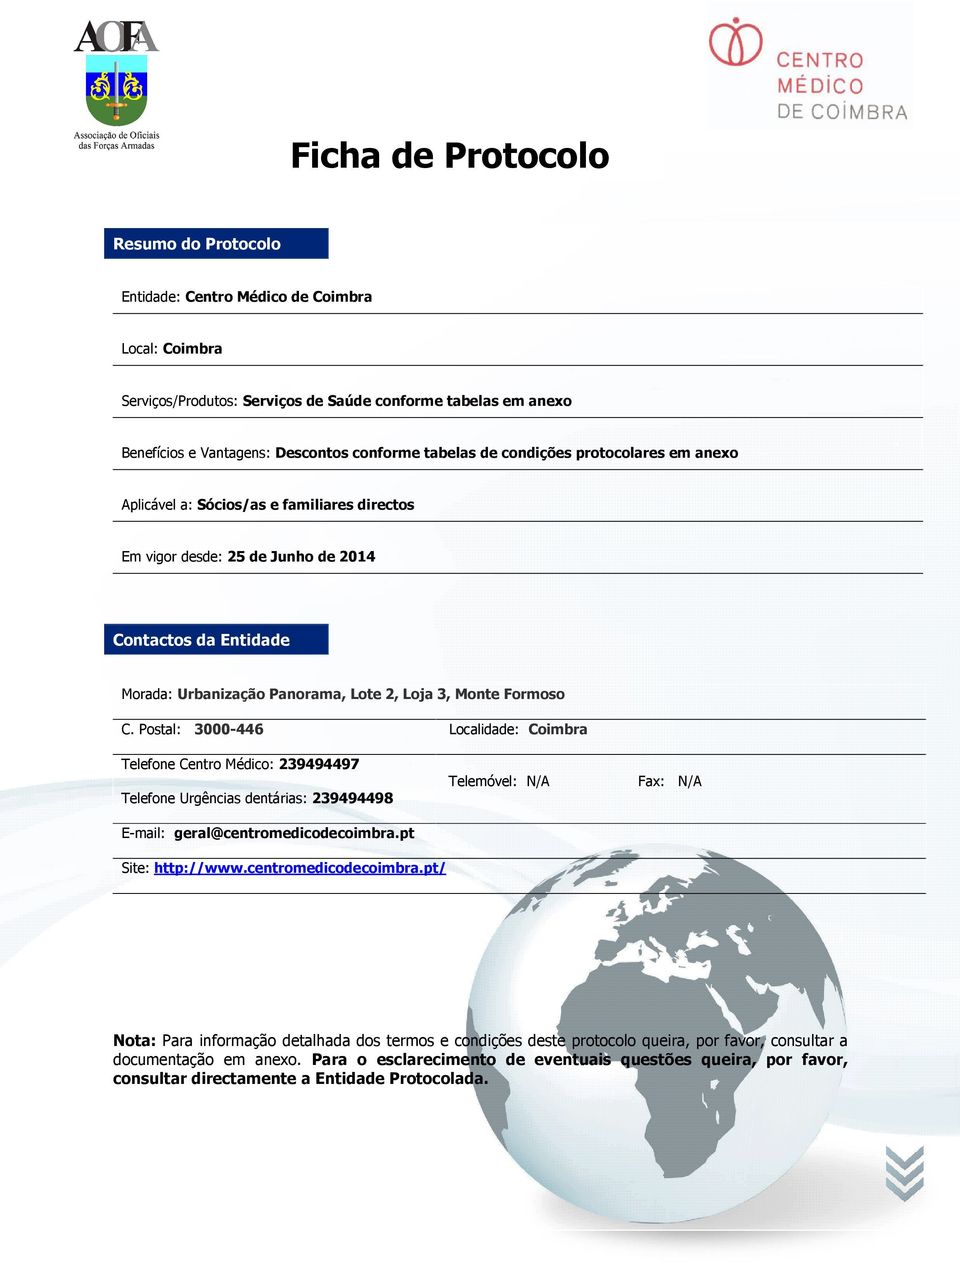 Formoso C. Postal: 3000-446 Localidade: Coimbra Telefone Centro Médico: 239494497 Telefone Urgências dentárias: 239494498 E-mail: geral@centromedicodecoimbra.